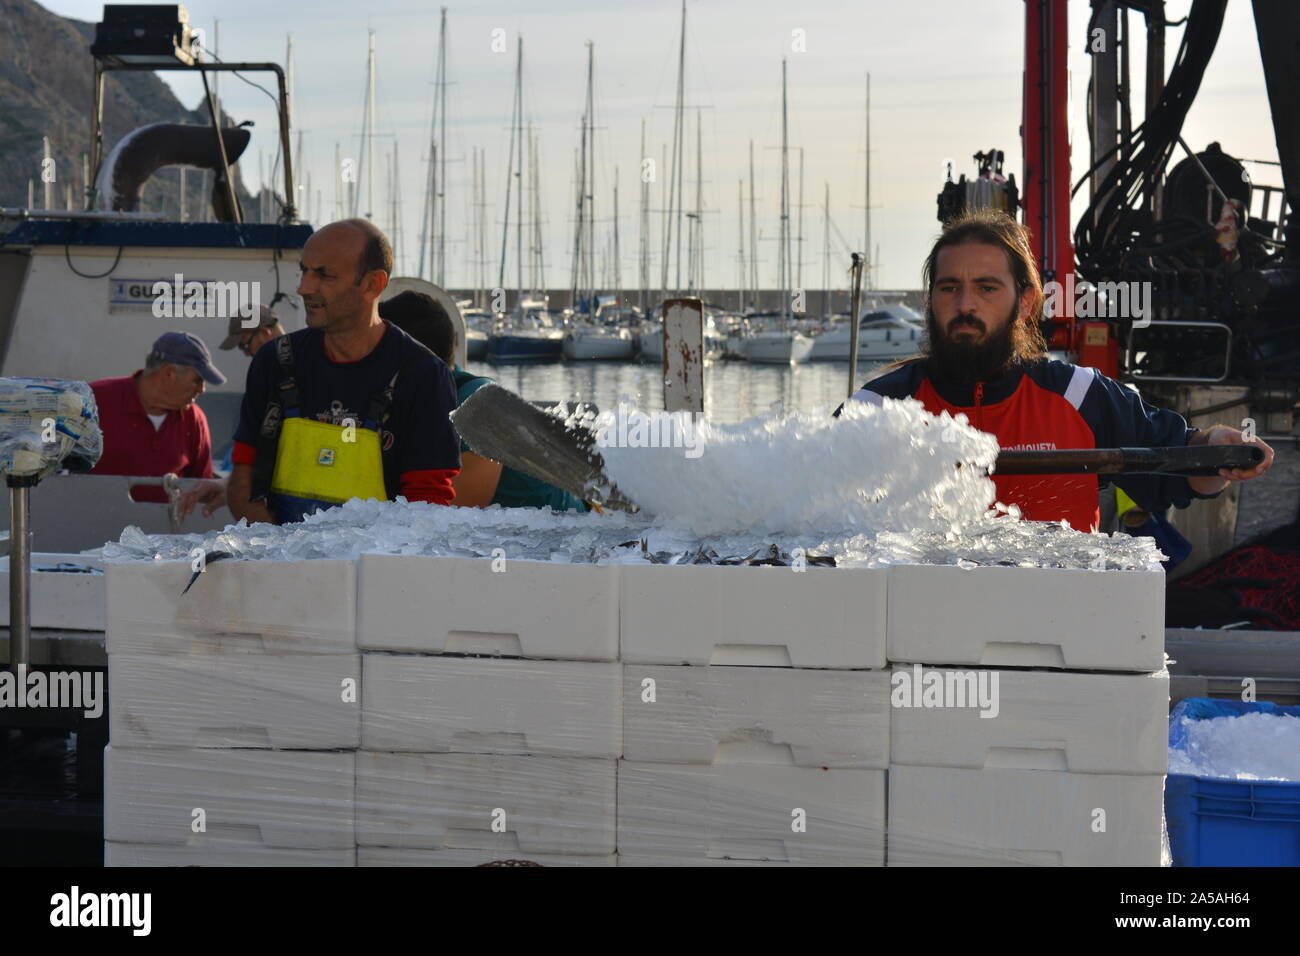 Boxen von fangfrischen Sardinen und Eis entladen von einem Fischtrawler, mit Fischern in ölzeug auf dem Boot im Hintergrund. Stockfoto